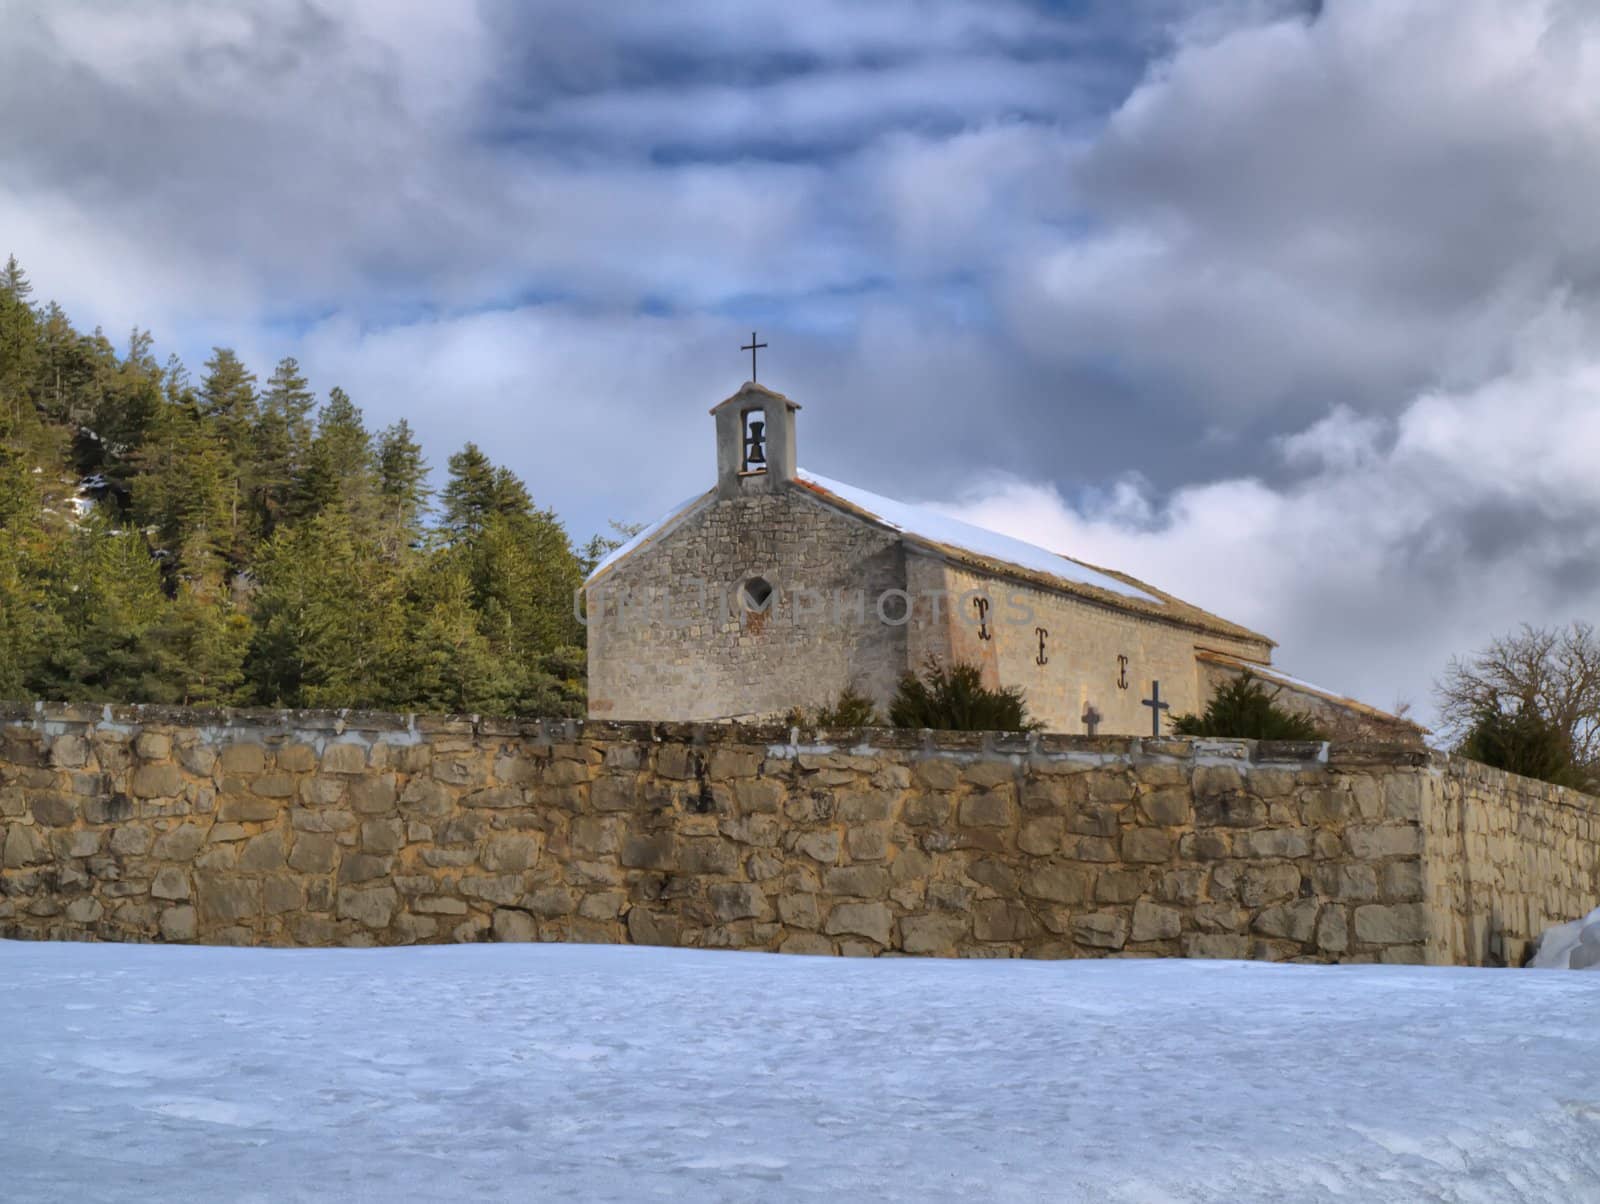 Provence chapel in a snowy landscape by jbouzou